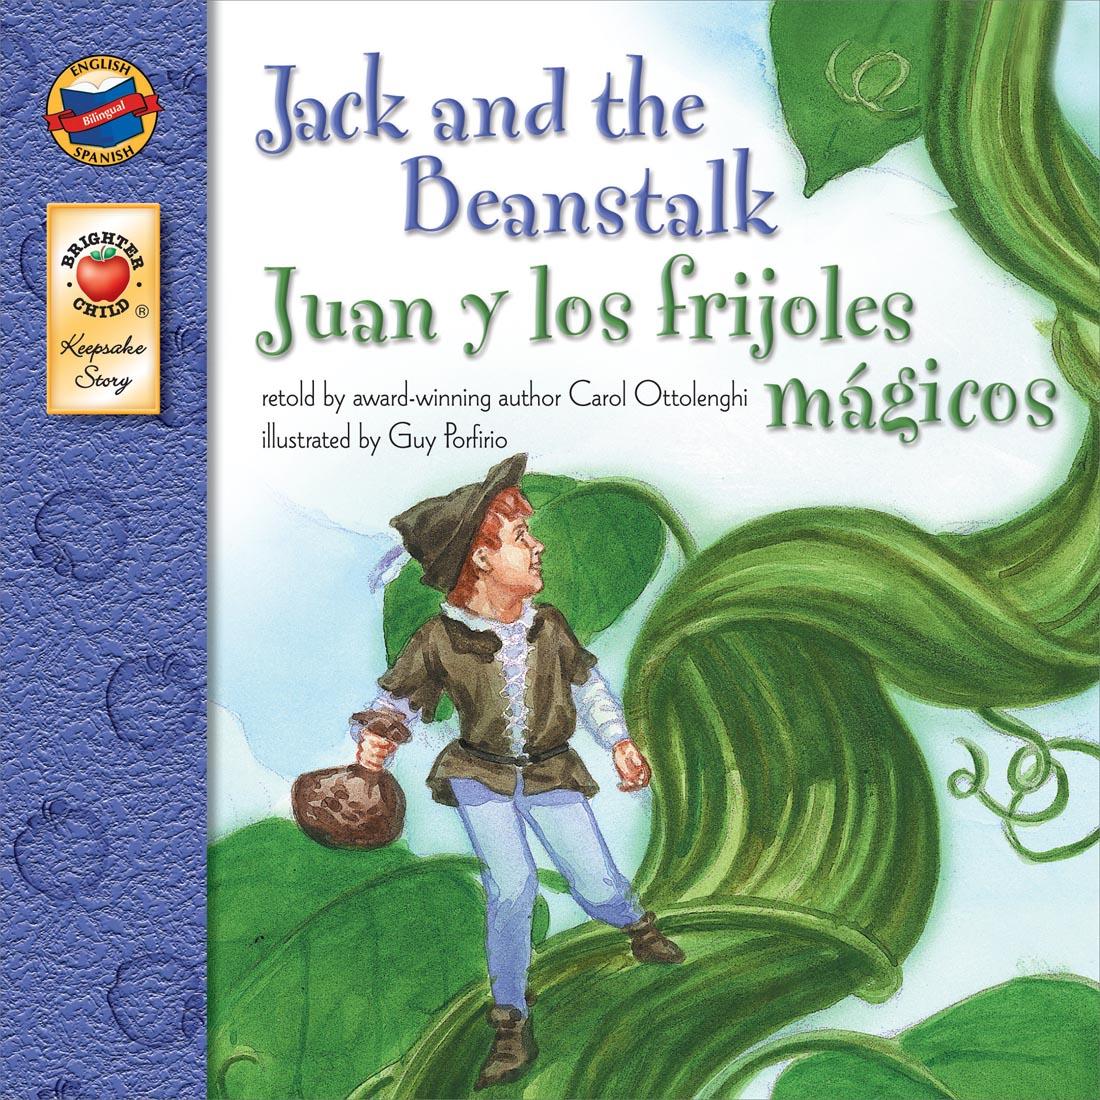 Jack and the Beanstalk Juan y los Frijoles Magicos